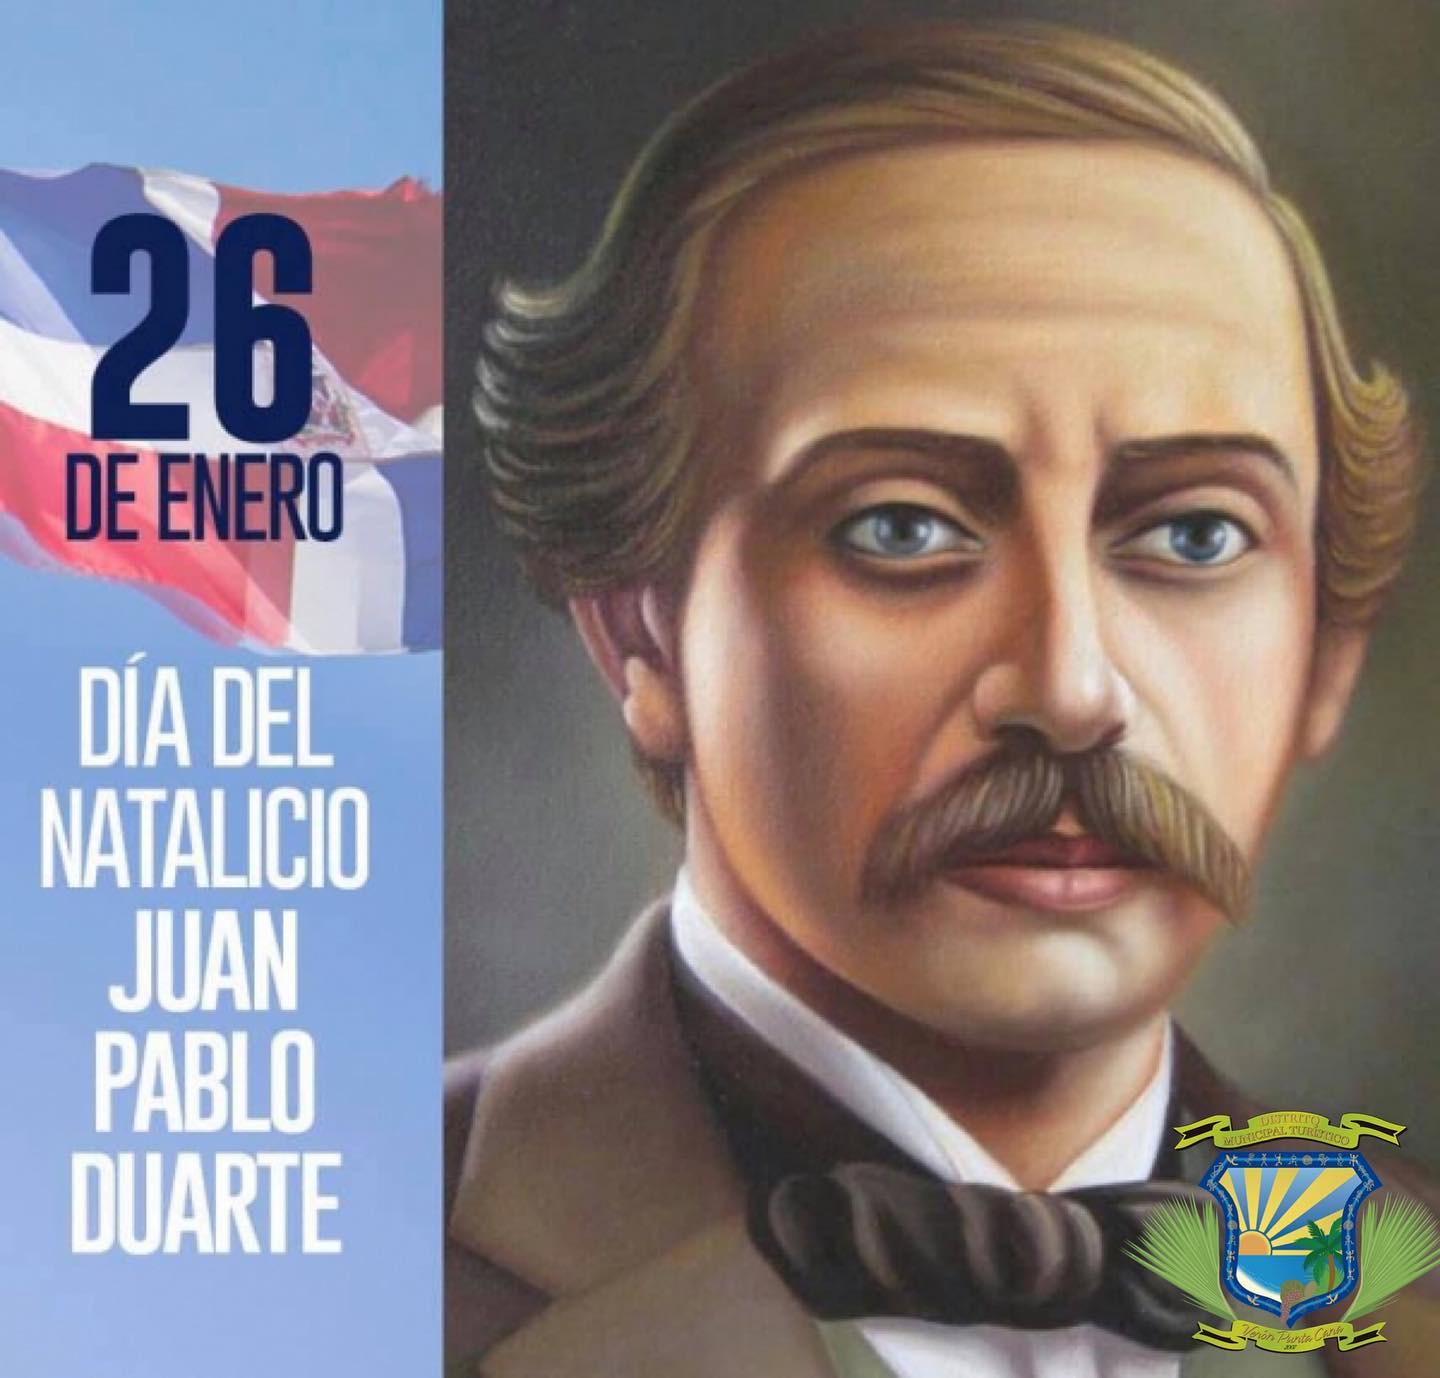 Día del natalicio de Juan Pablo Duarte